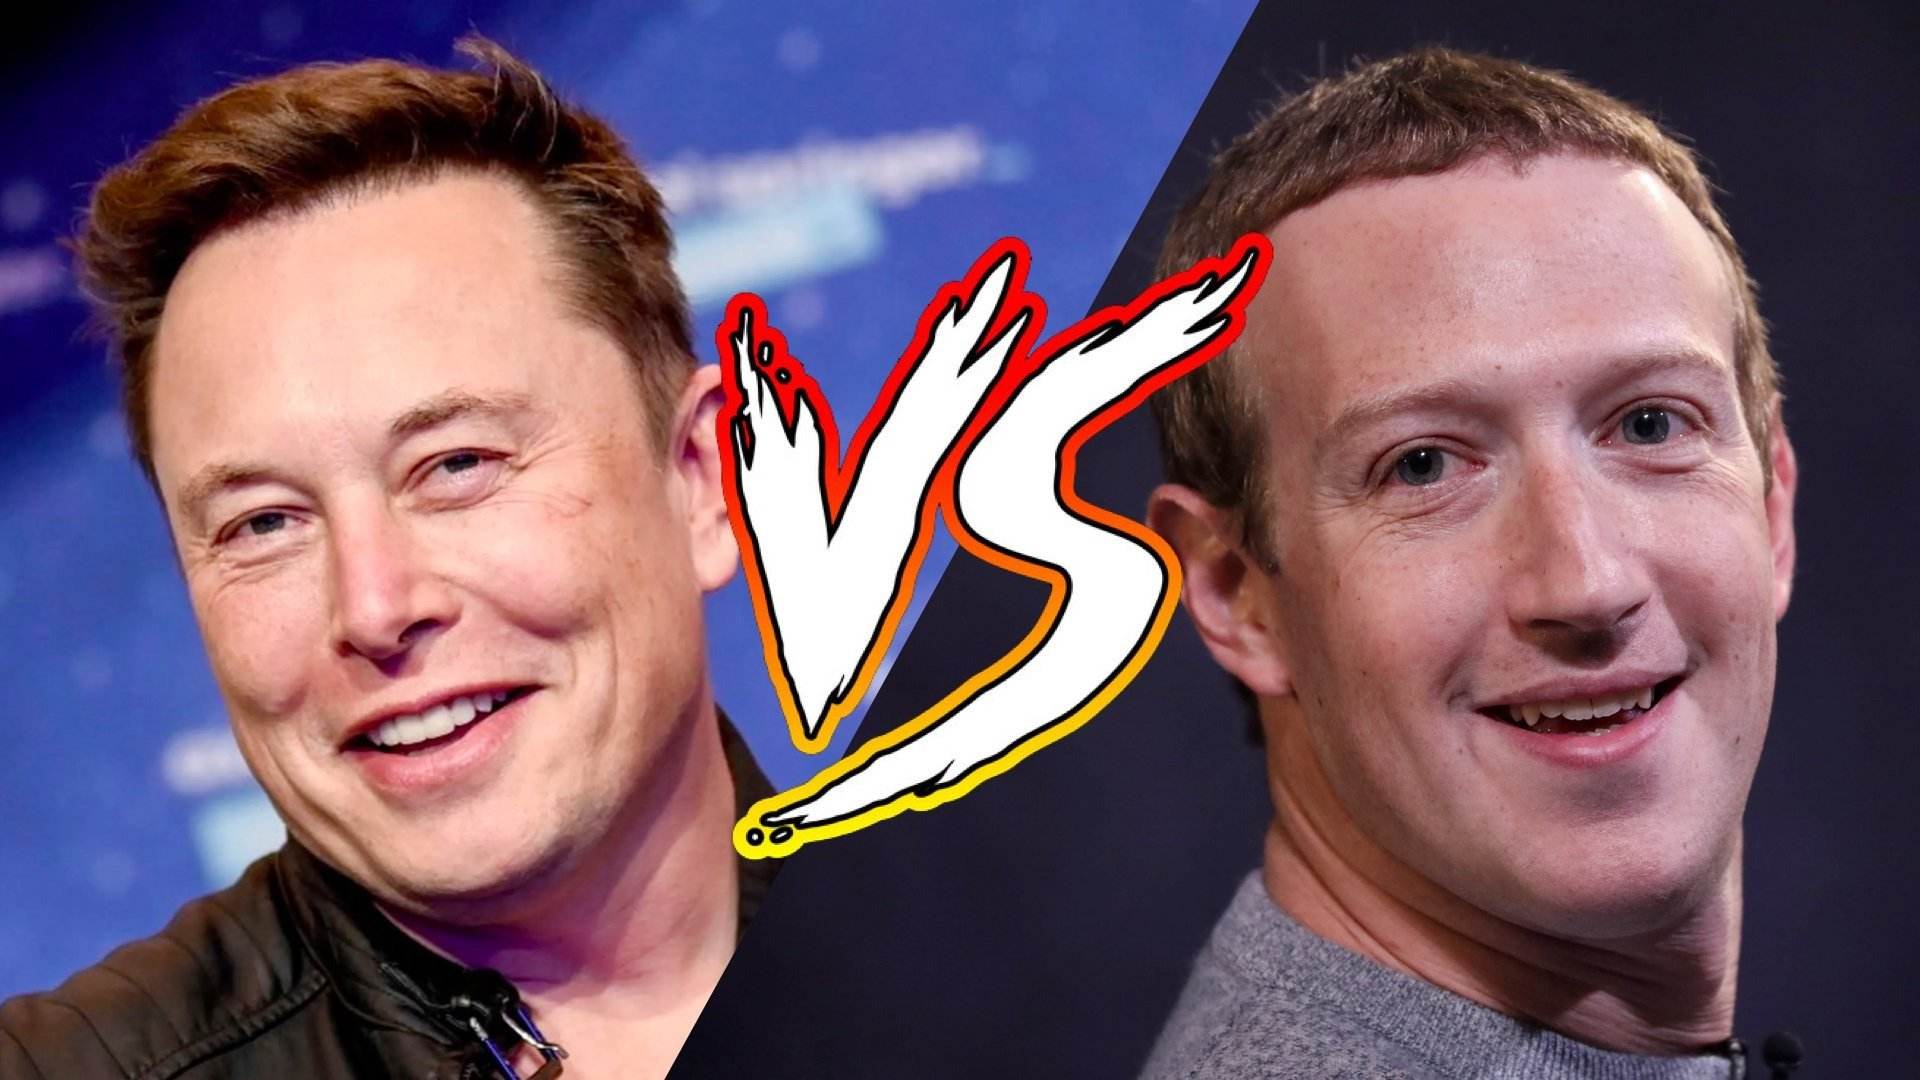 Zuckerberg carrega contra Elon Musk i no hi haurà "velada" ara per ara